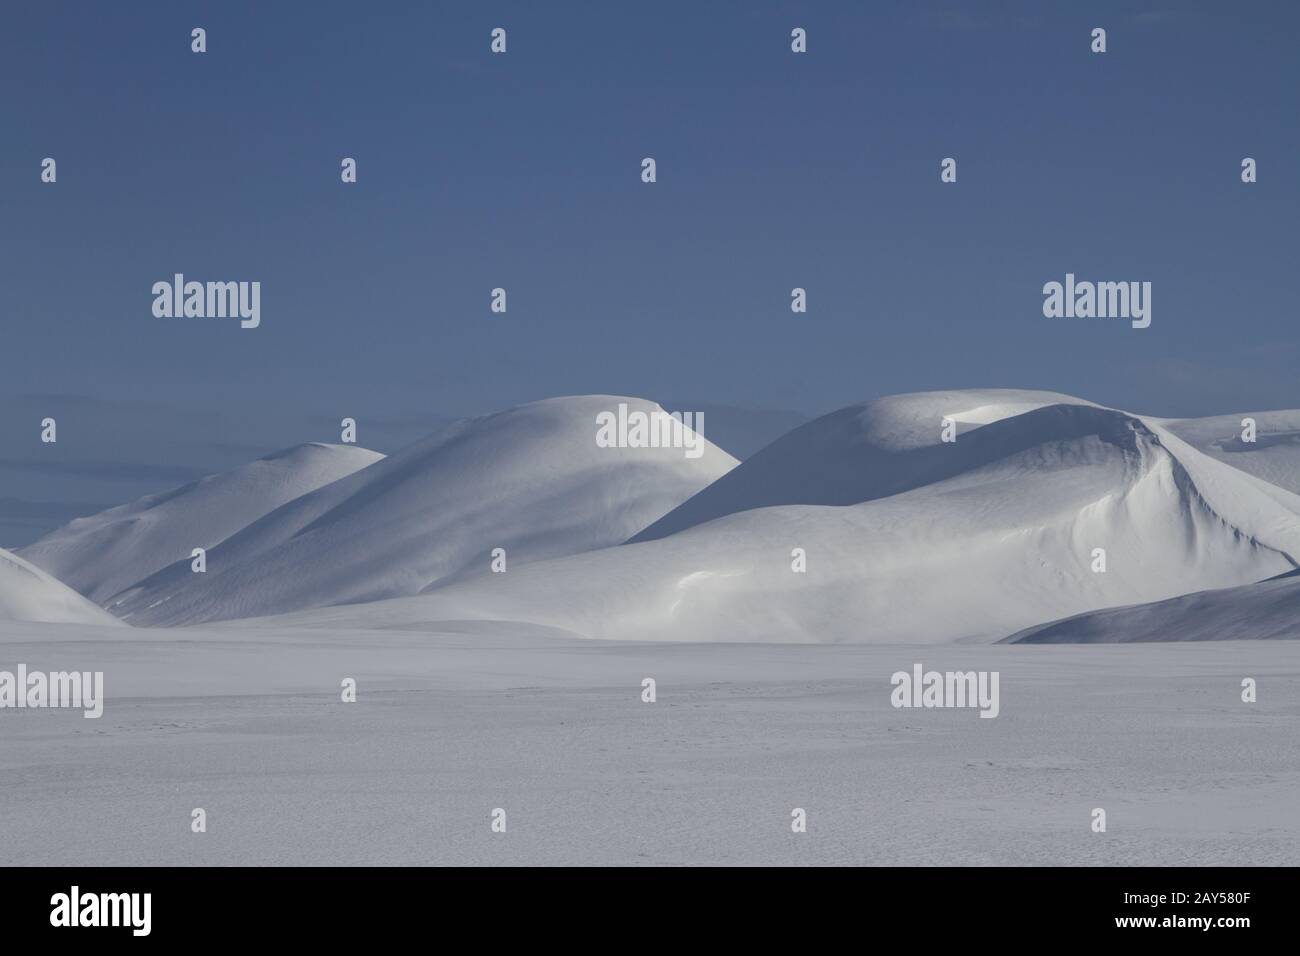 La isla de Bering con colinas cubiertas de nieve en un día soleado Foto de stock